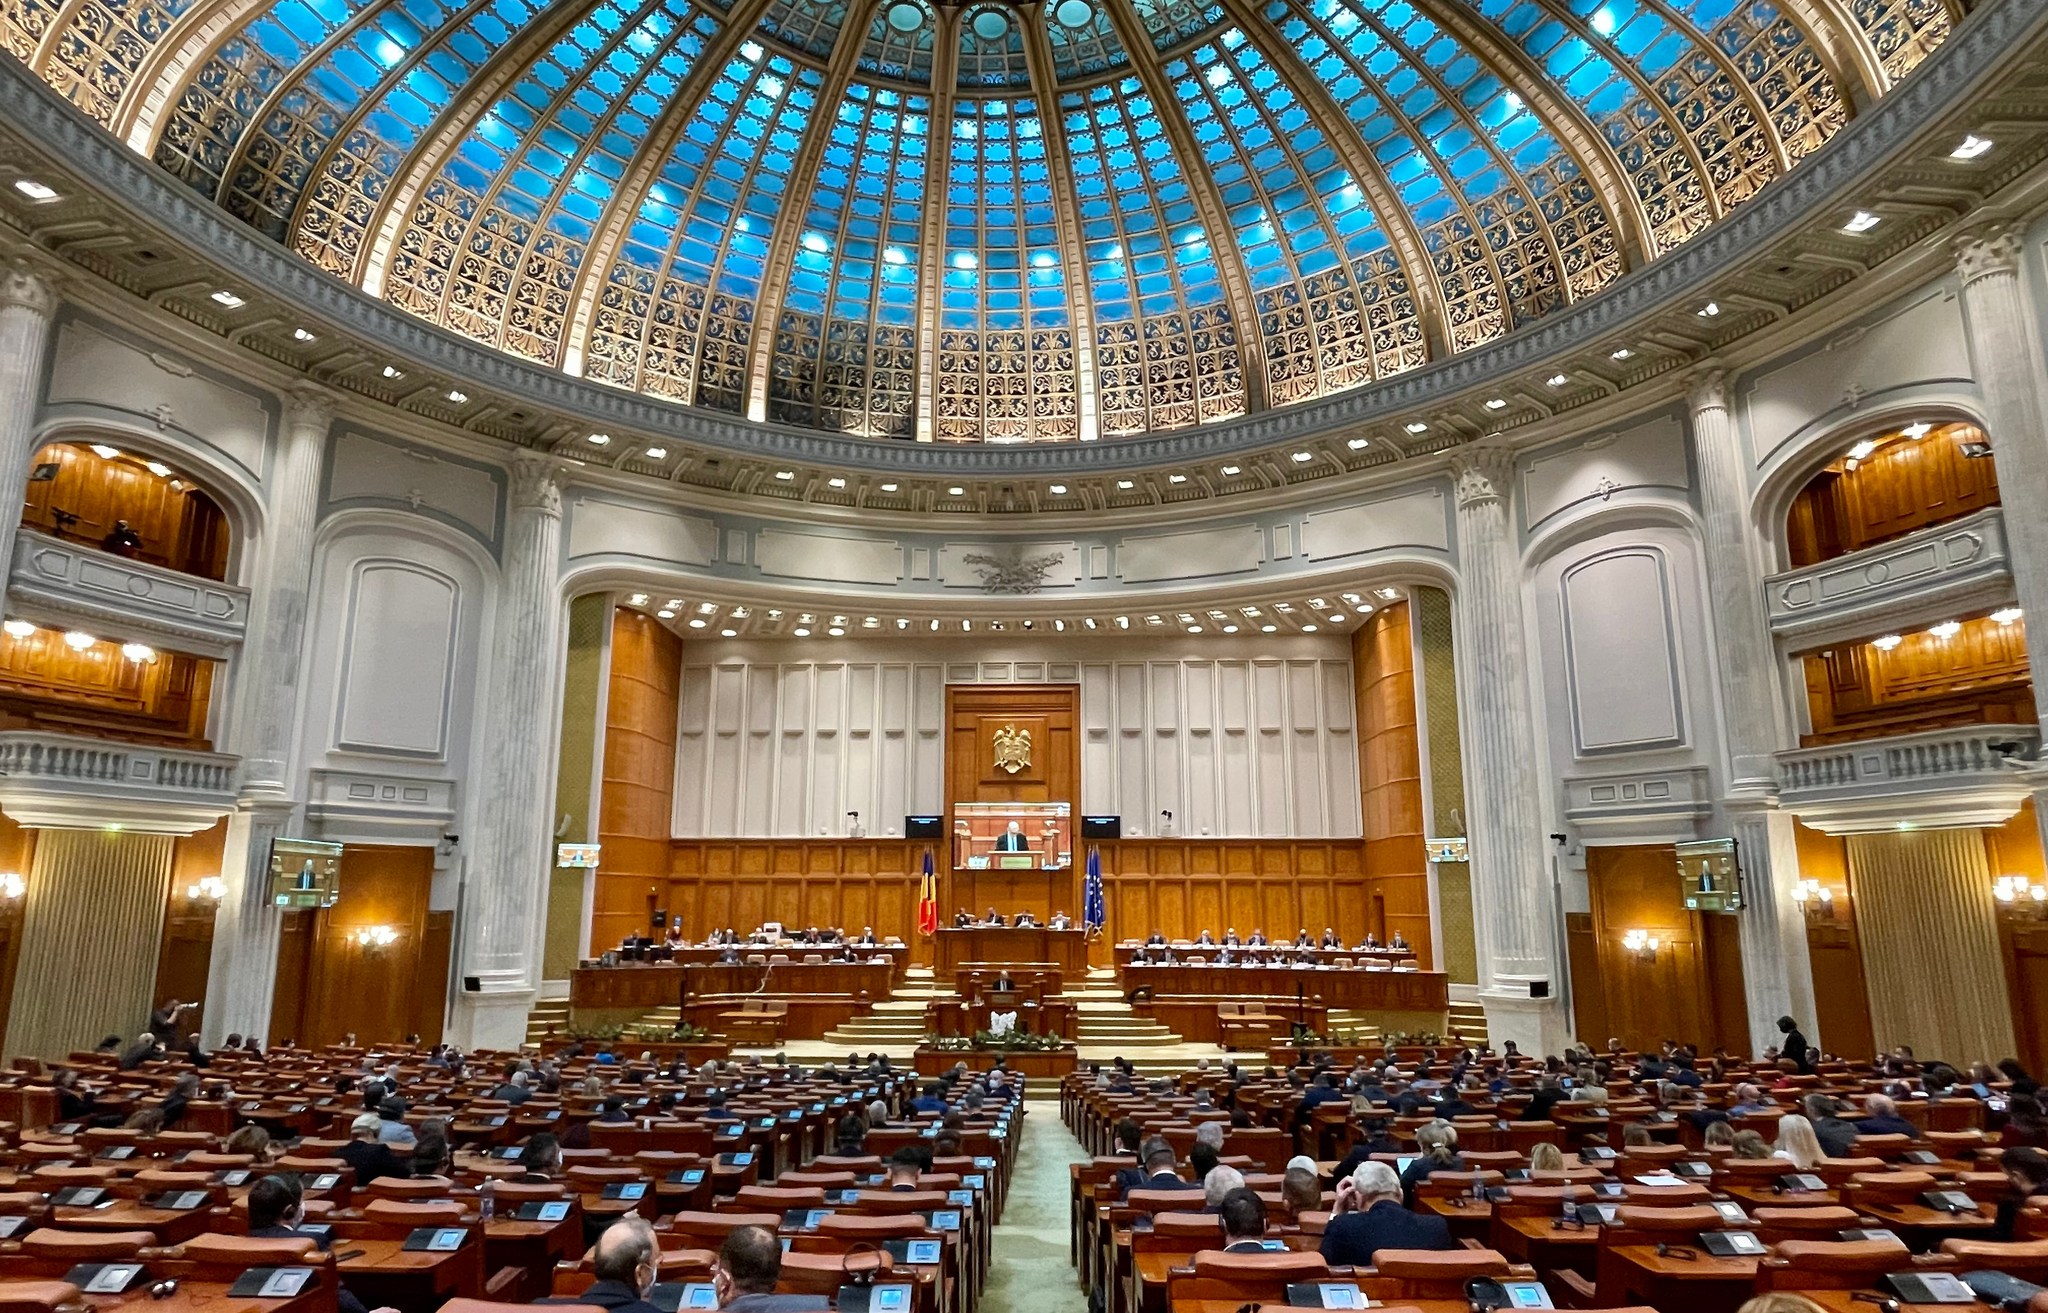 Parlamentul României a adoptat o rezoluţie privind perspectiva europeană a Republicii Moldova